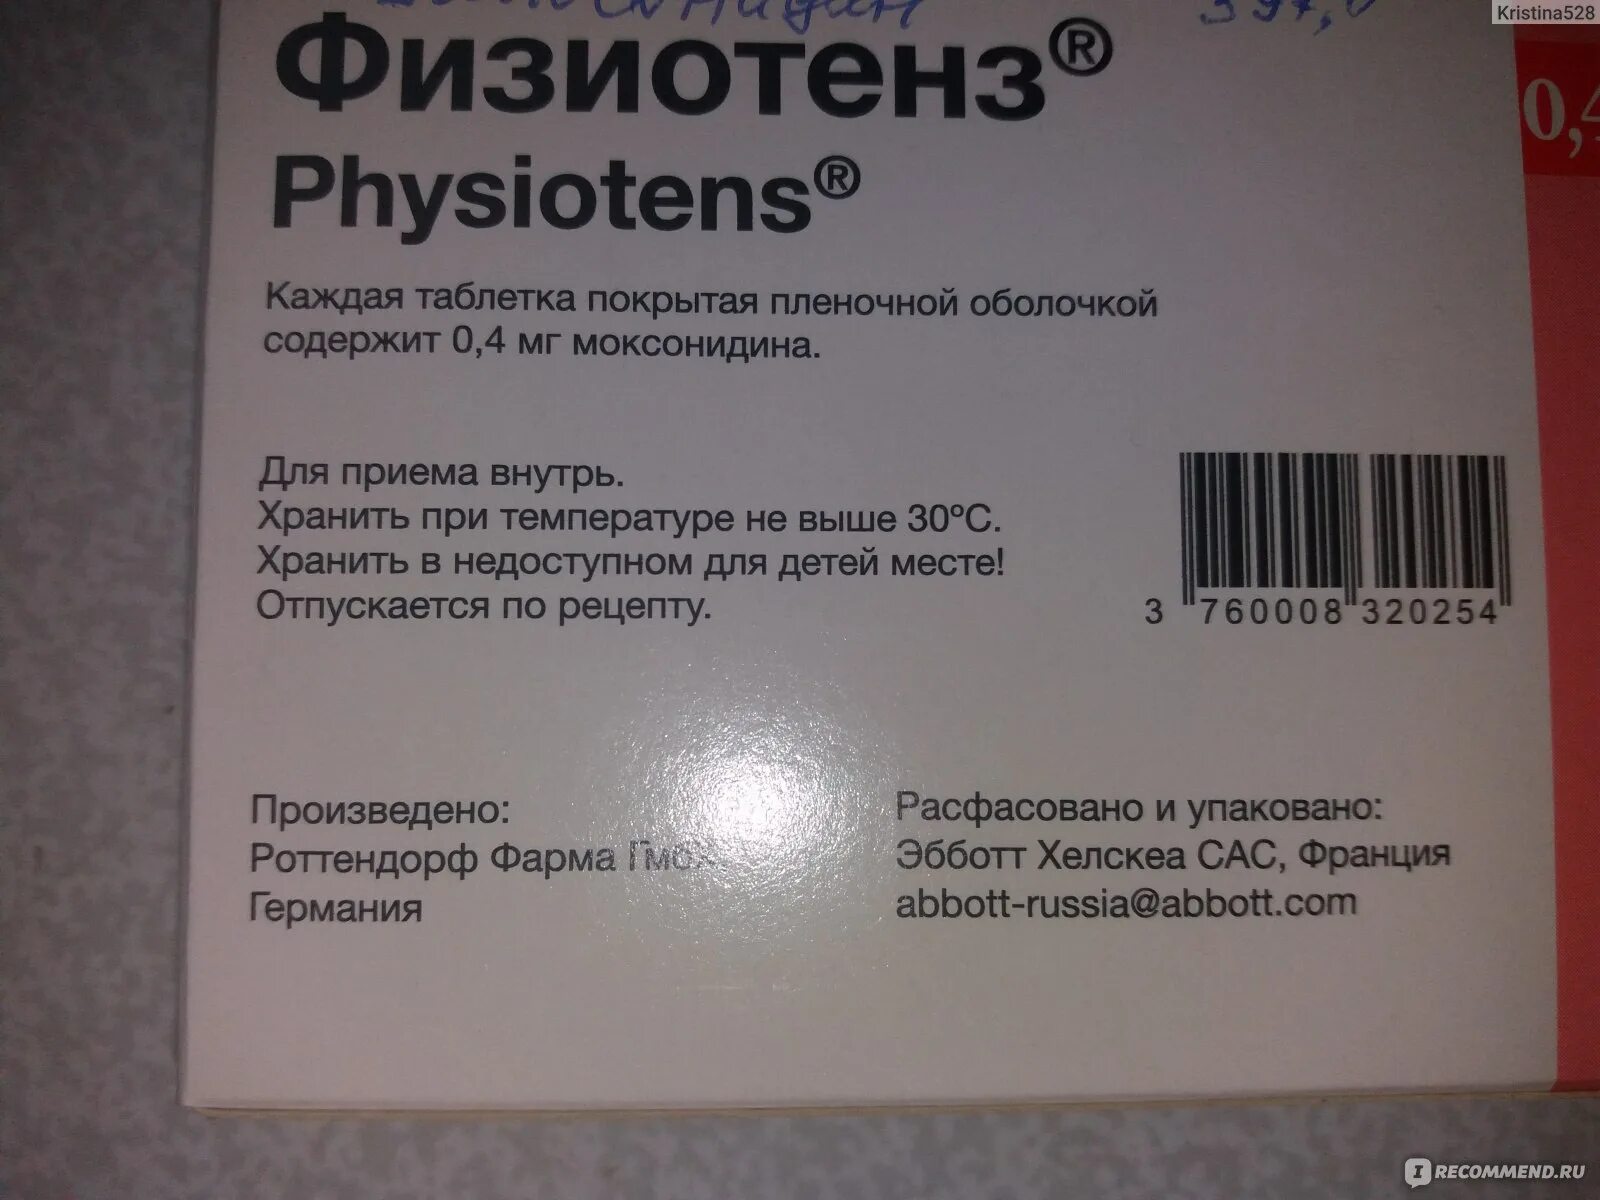 Физиотенз отзывы врачей. Таблетки от давления физиотенз 0.4. Таблетки от давления физиотенз 0.2. Физиотенз Эббот производитель. Физиотенз от давления Эббот.